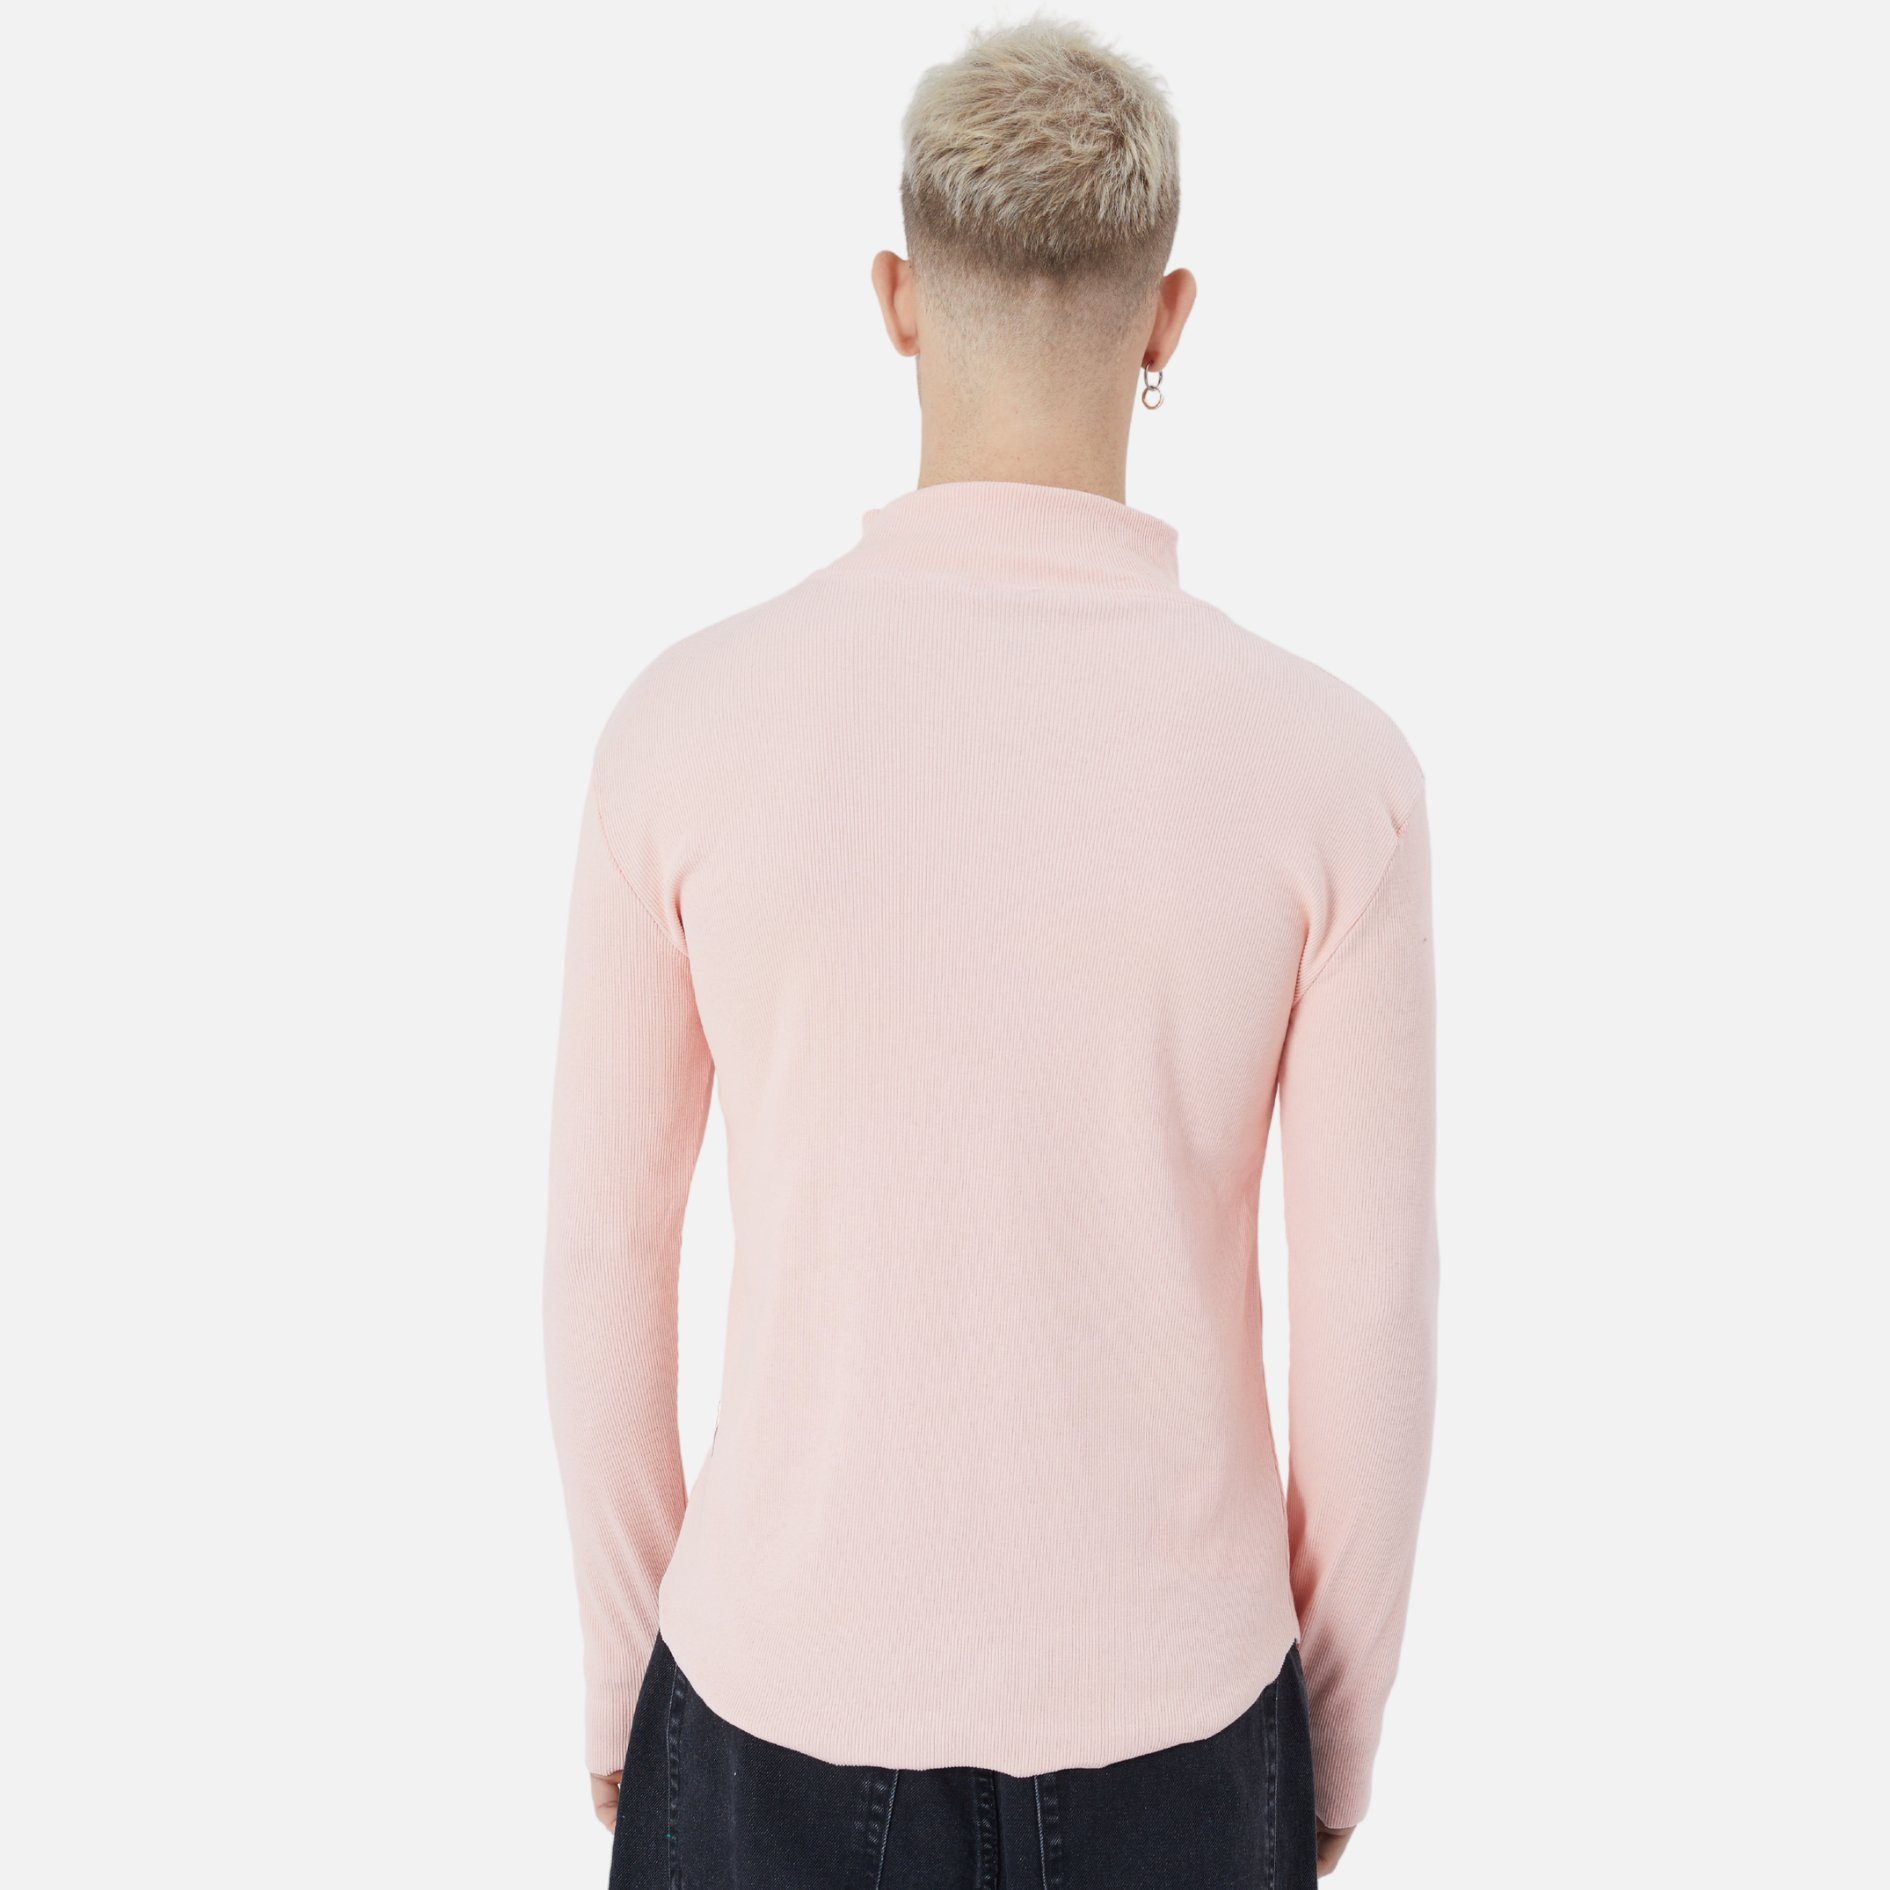 Sweatshirt Rundhals Rosa Sweatshirt COFI Herren Pullover Fit Regular Casuals